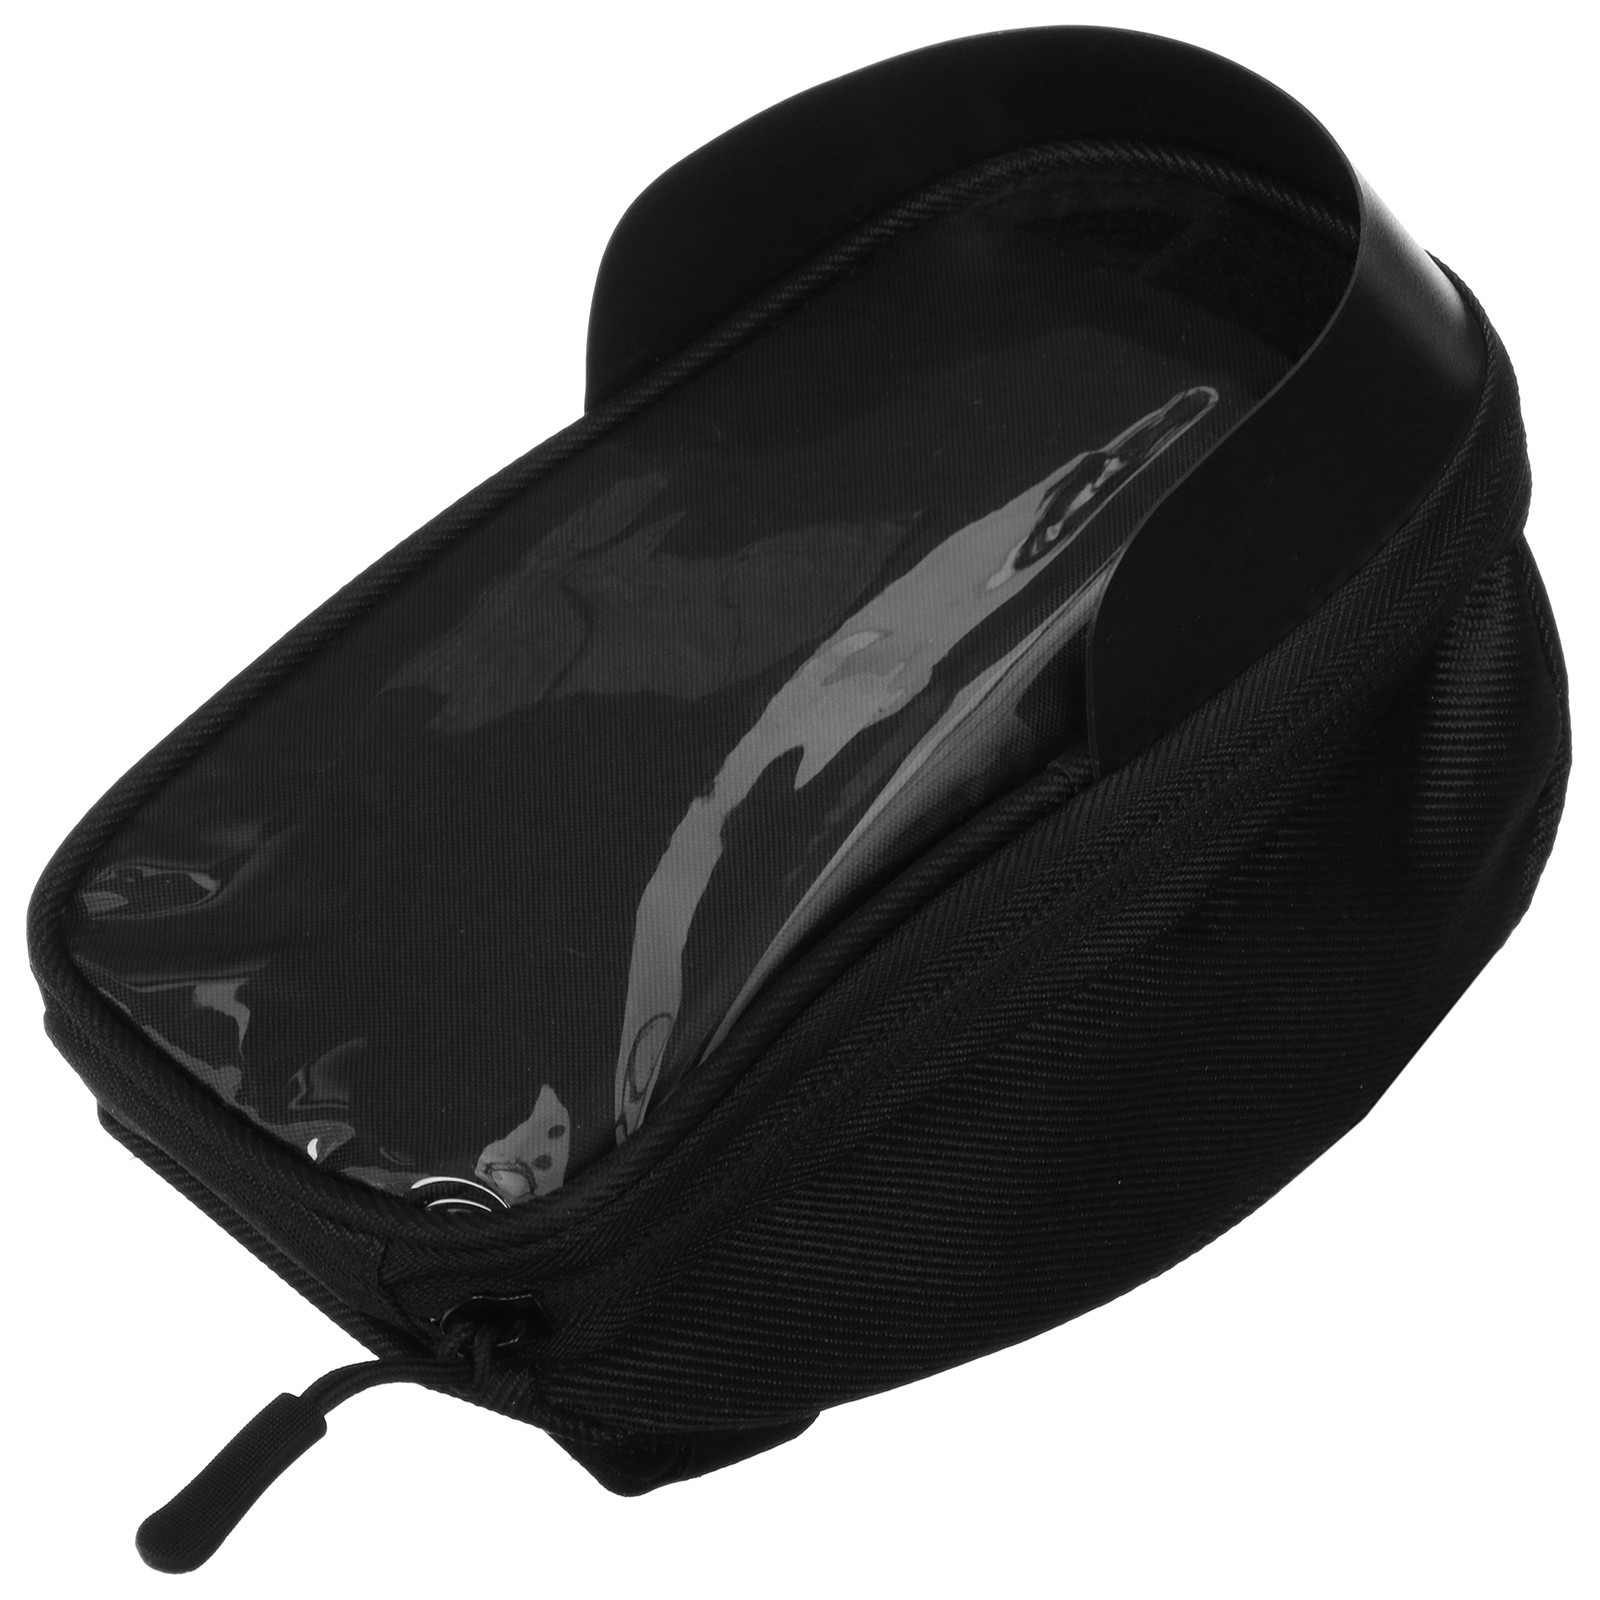 Велосипедная сумка Roswheel Для телефона черный